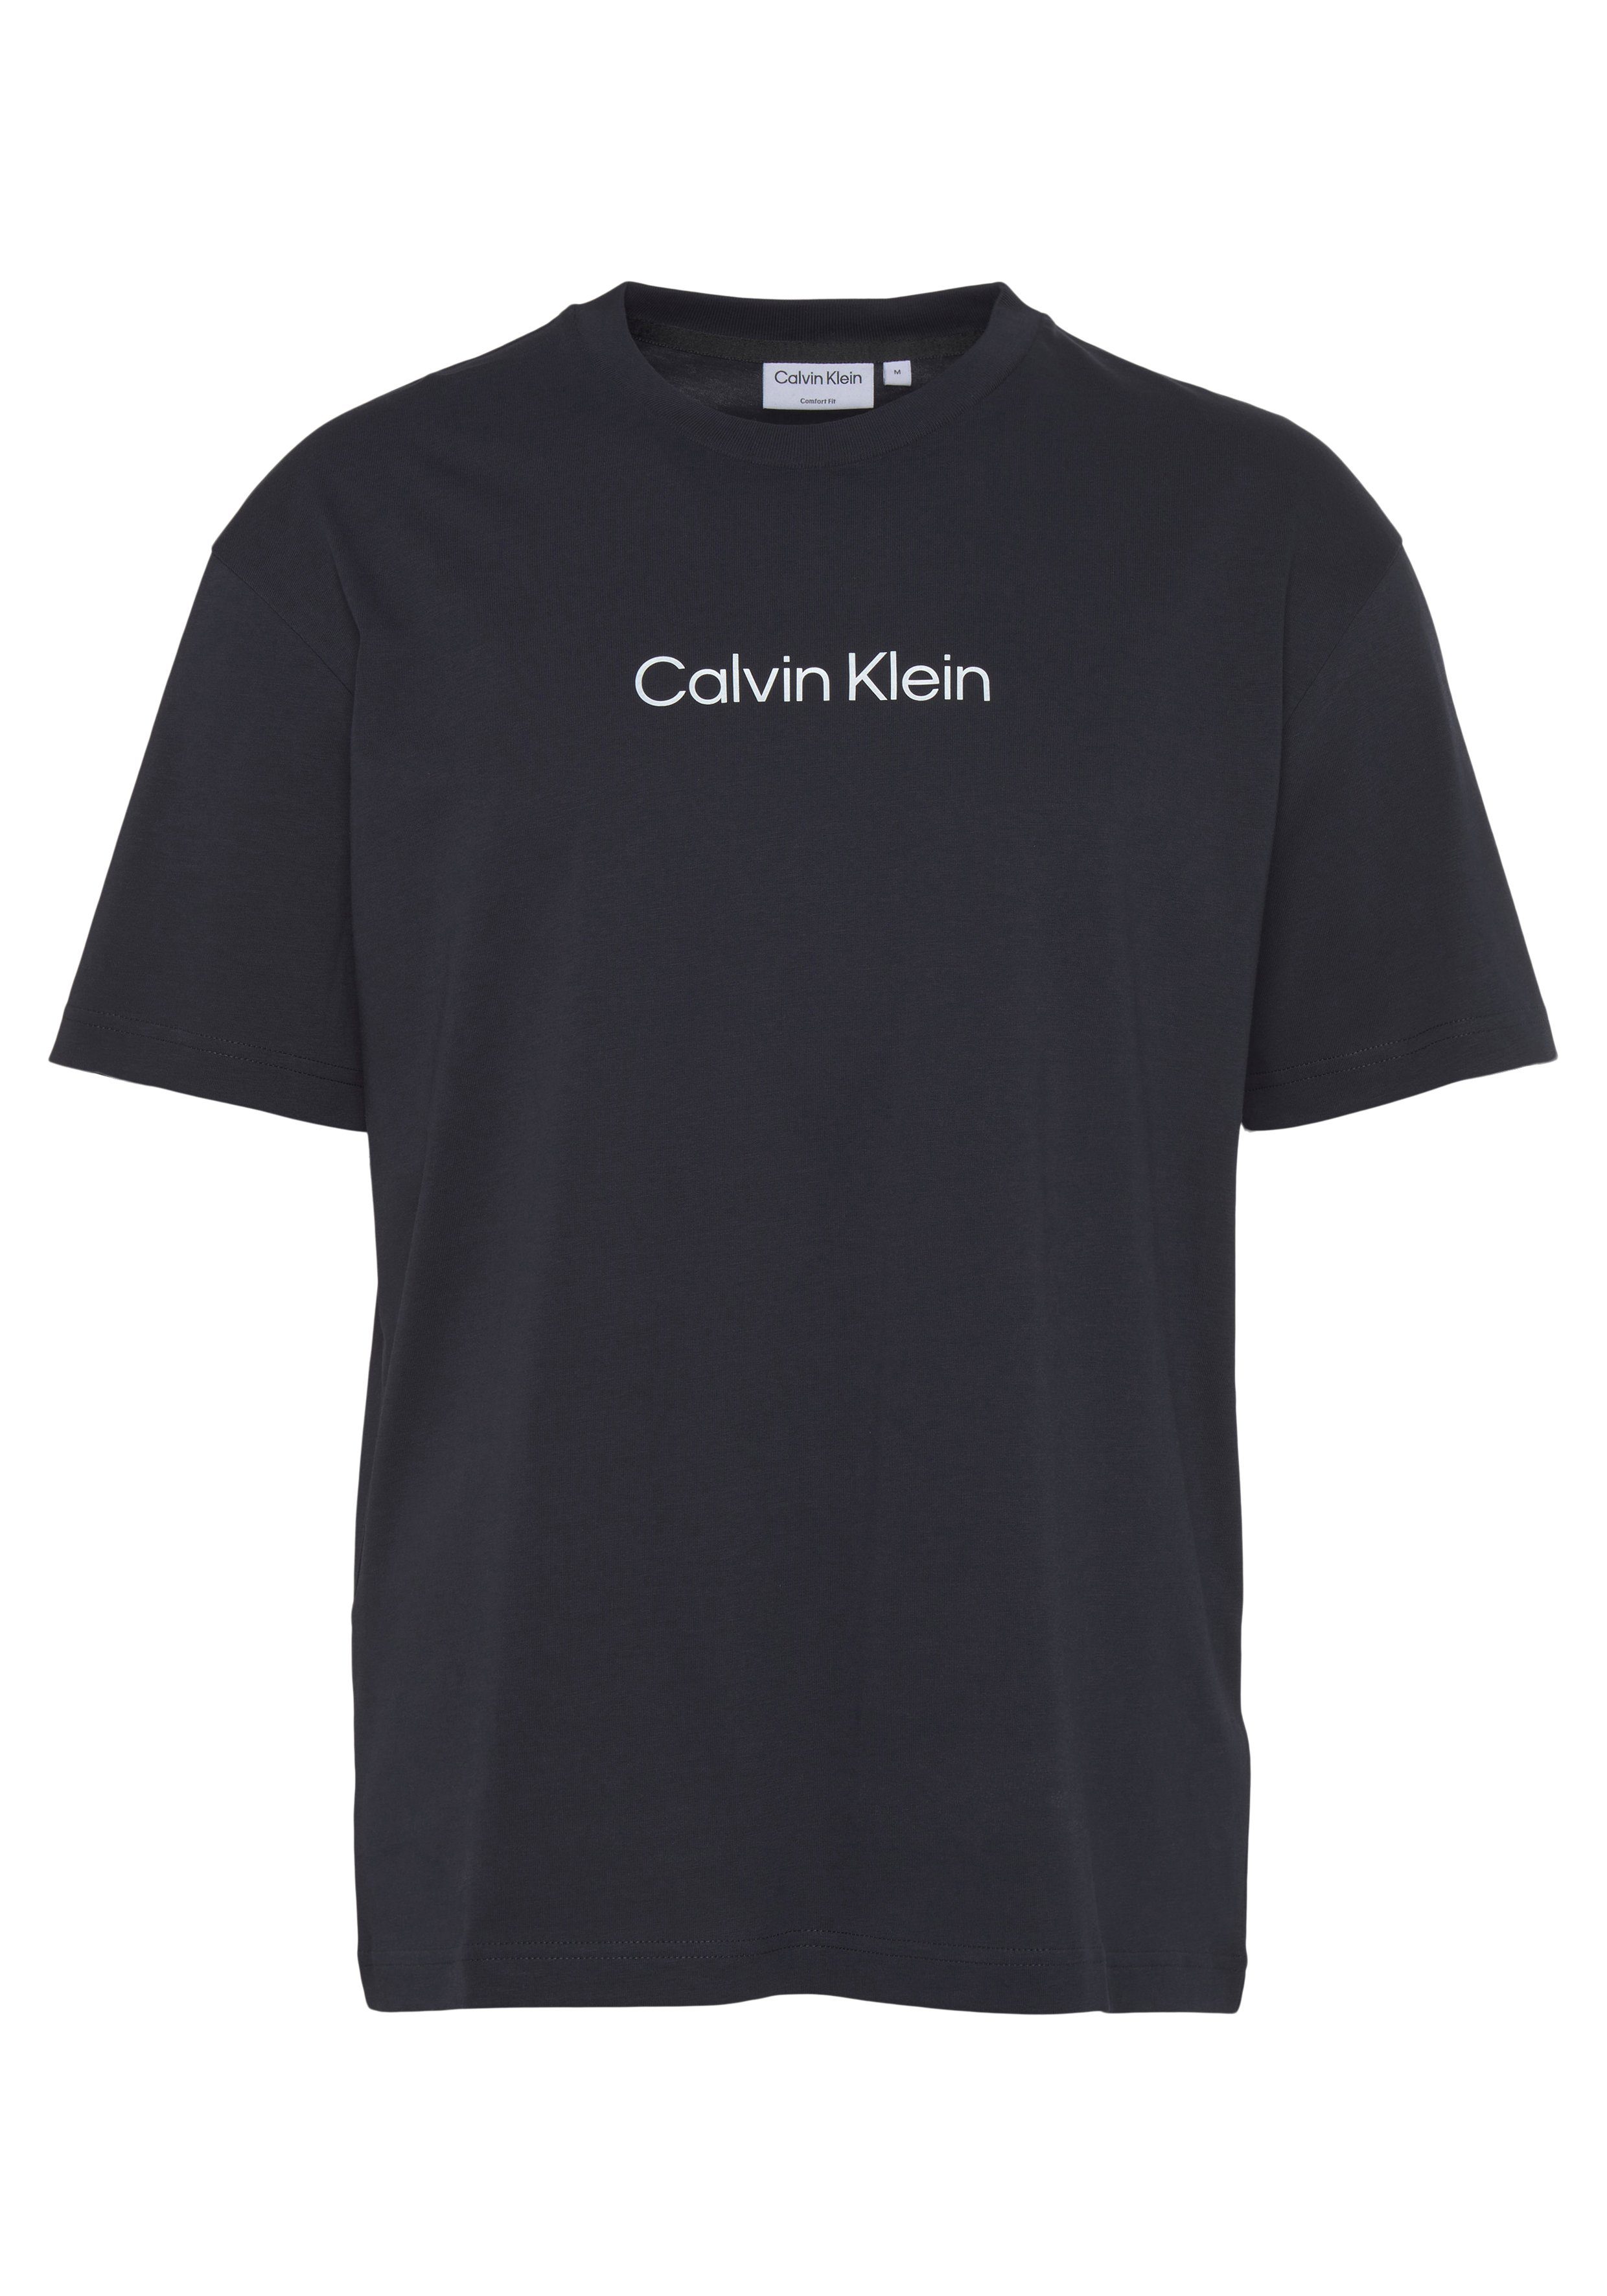 mit T-SHIRT Night T-Shirt Markenlabel Klein COMFORT Calvin Sky HERO aufgedrucktem LOGO